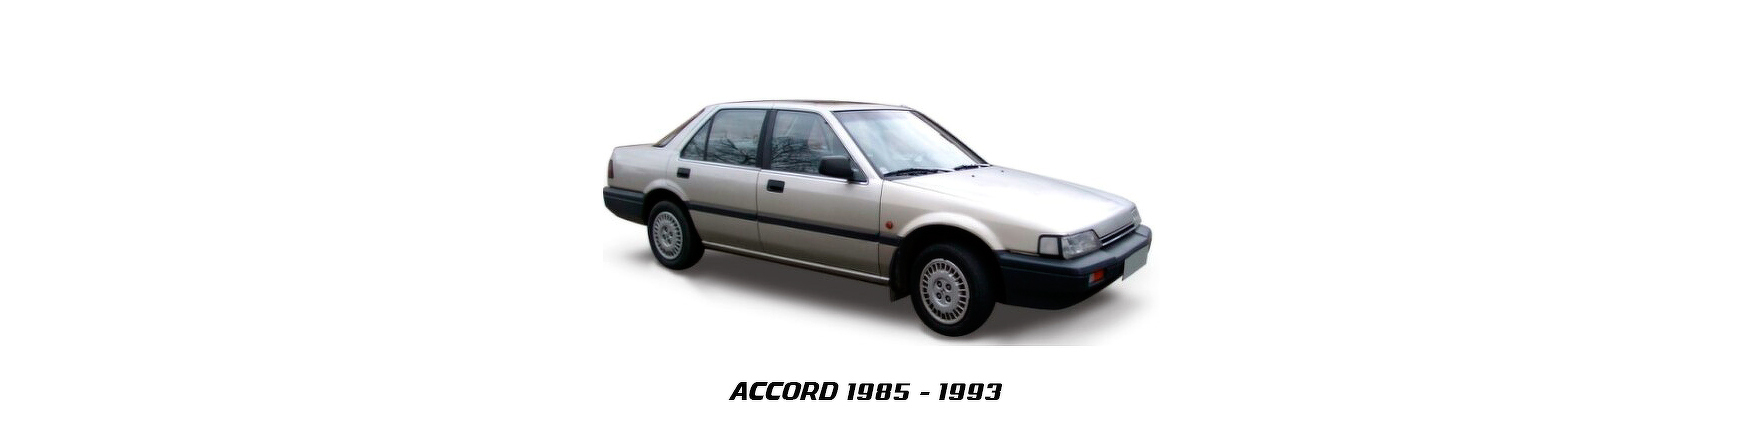 Piezas y Recambios de Honda Accord de 1985 a 1993. Veramauto.es